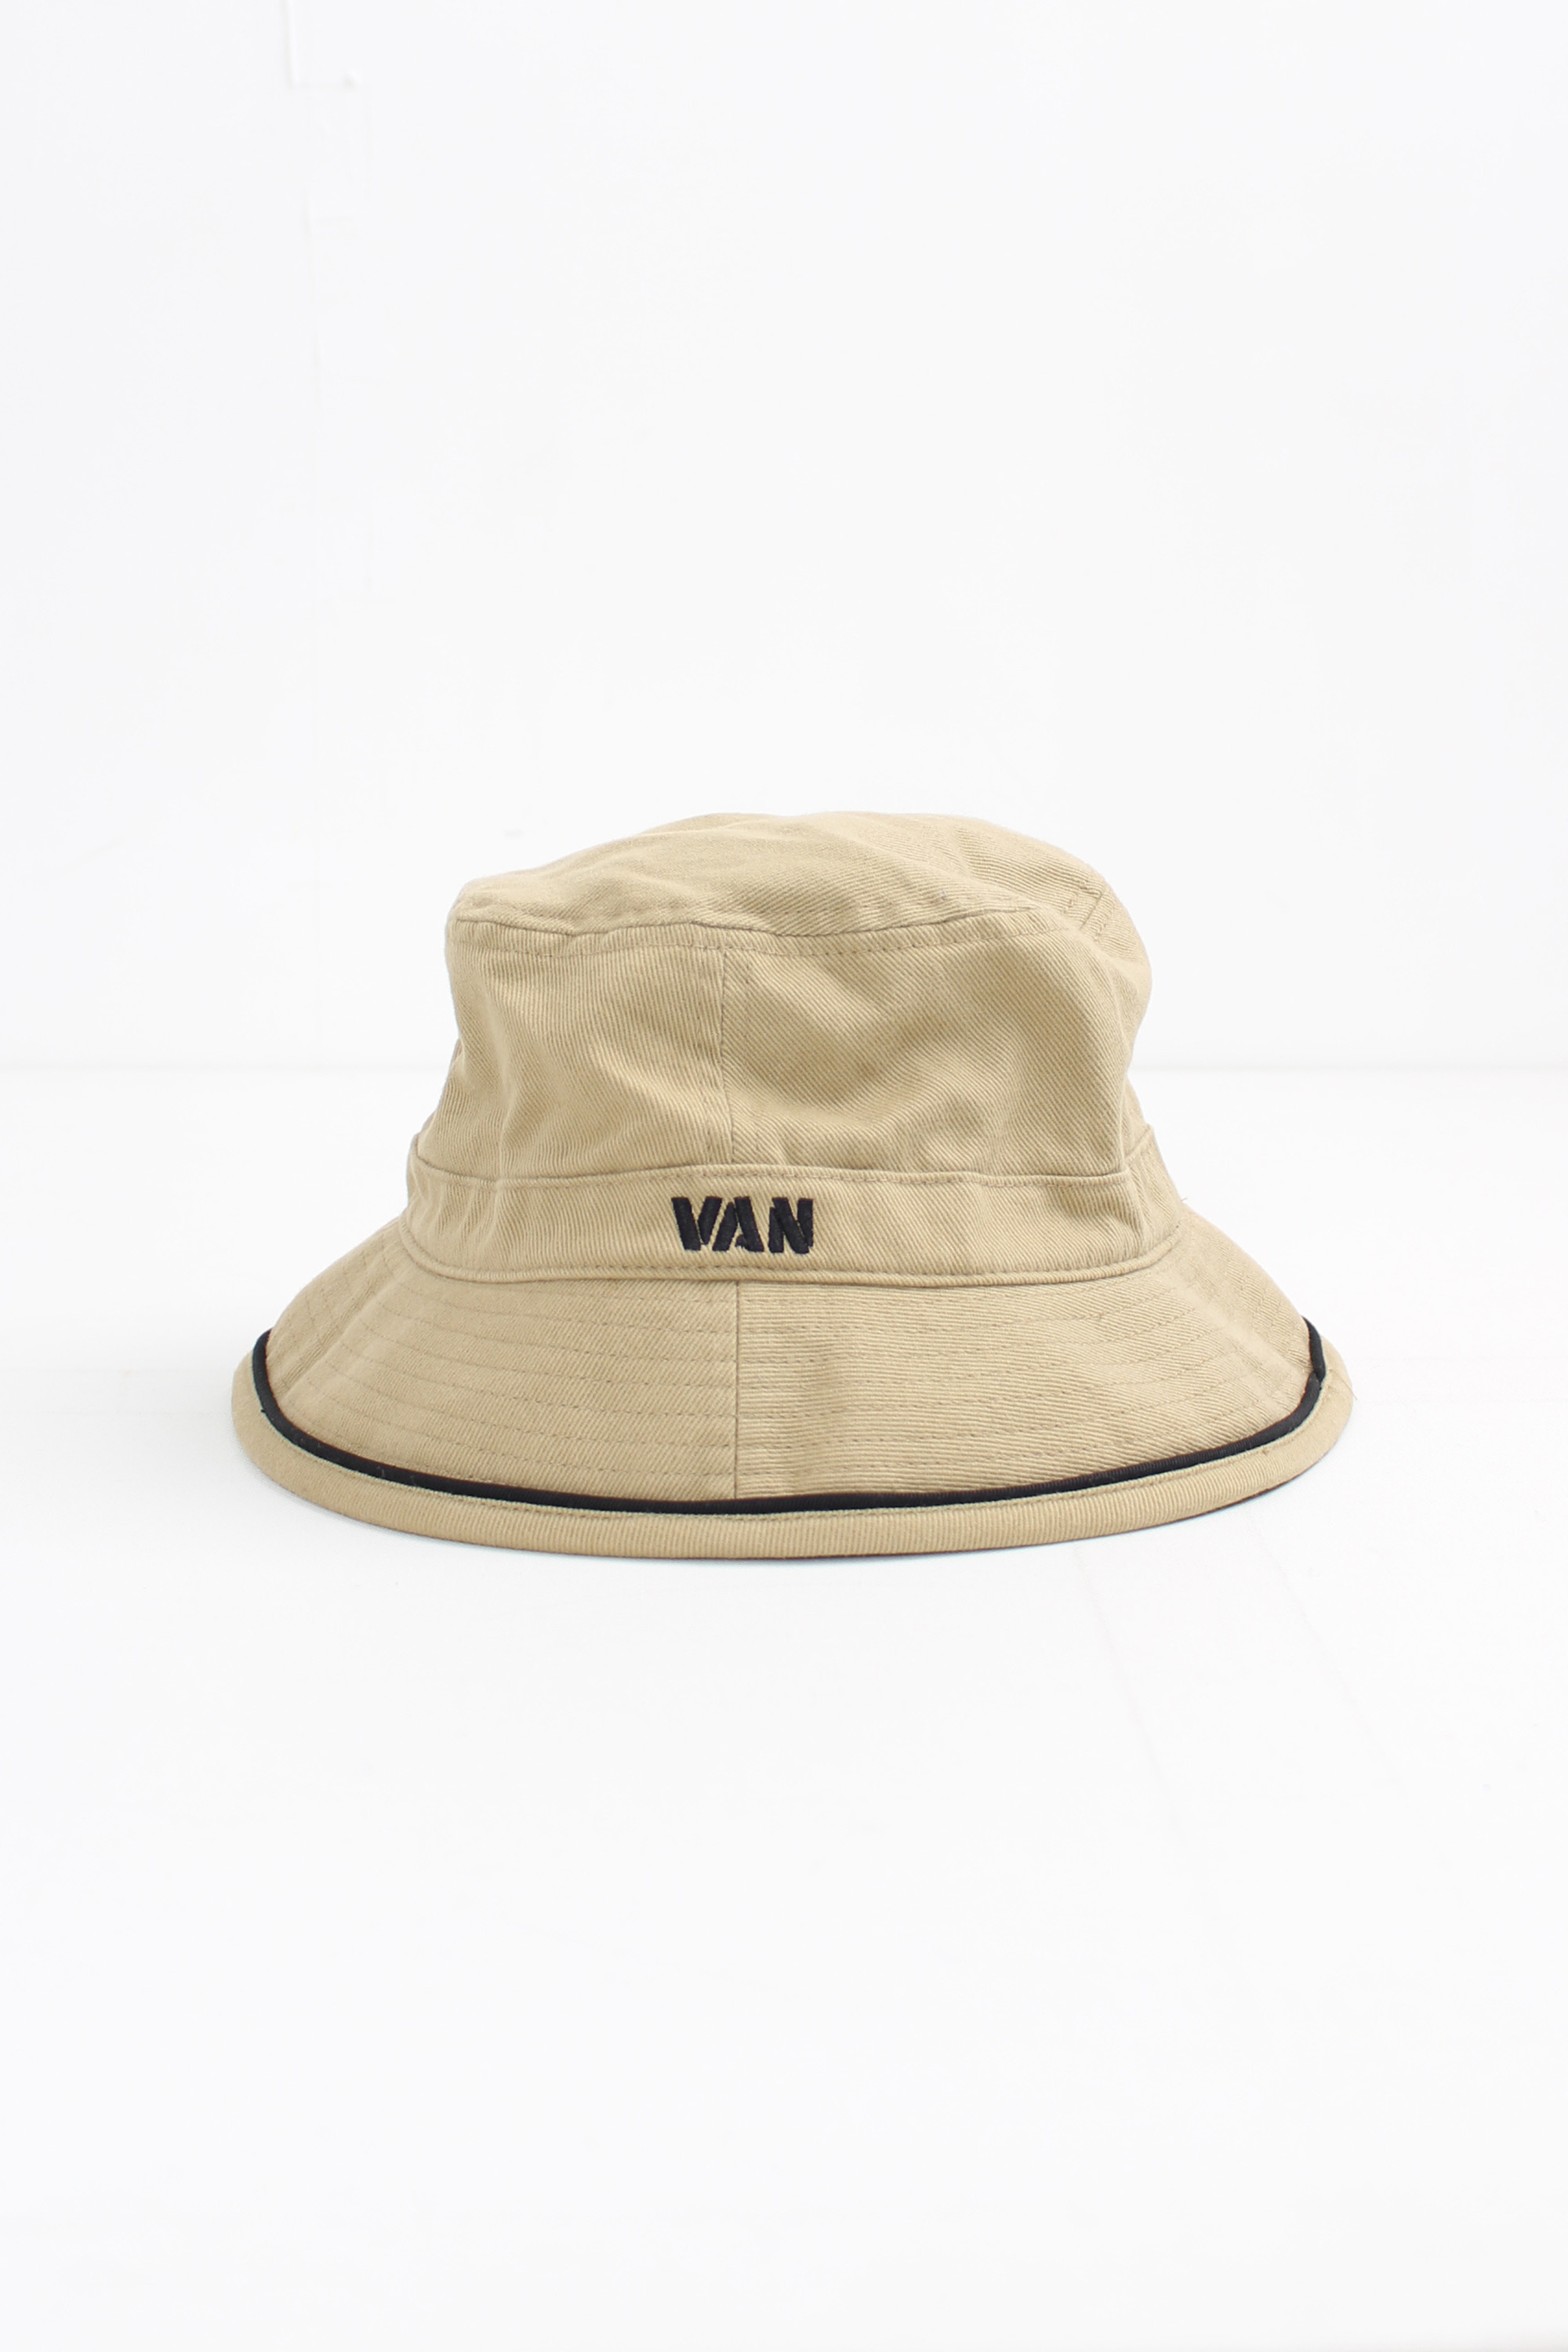 VAN bucket hat